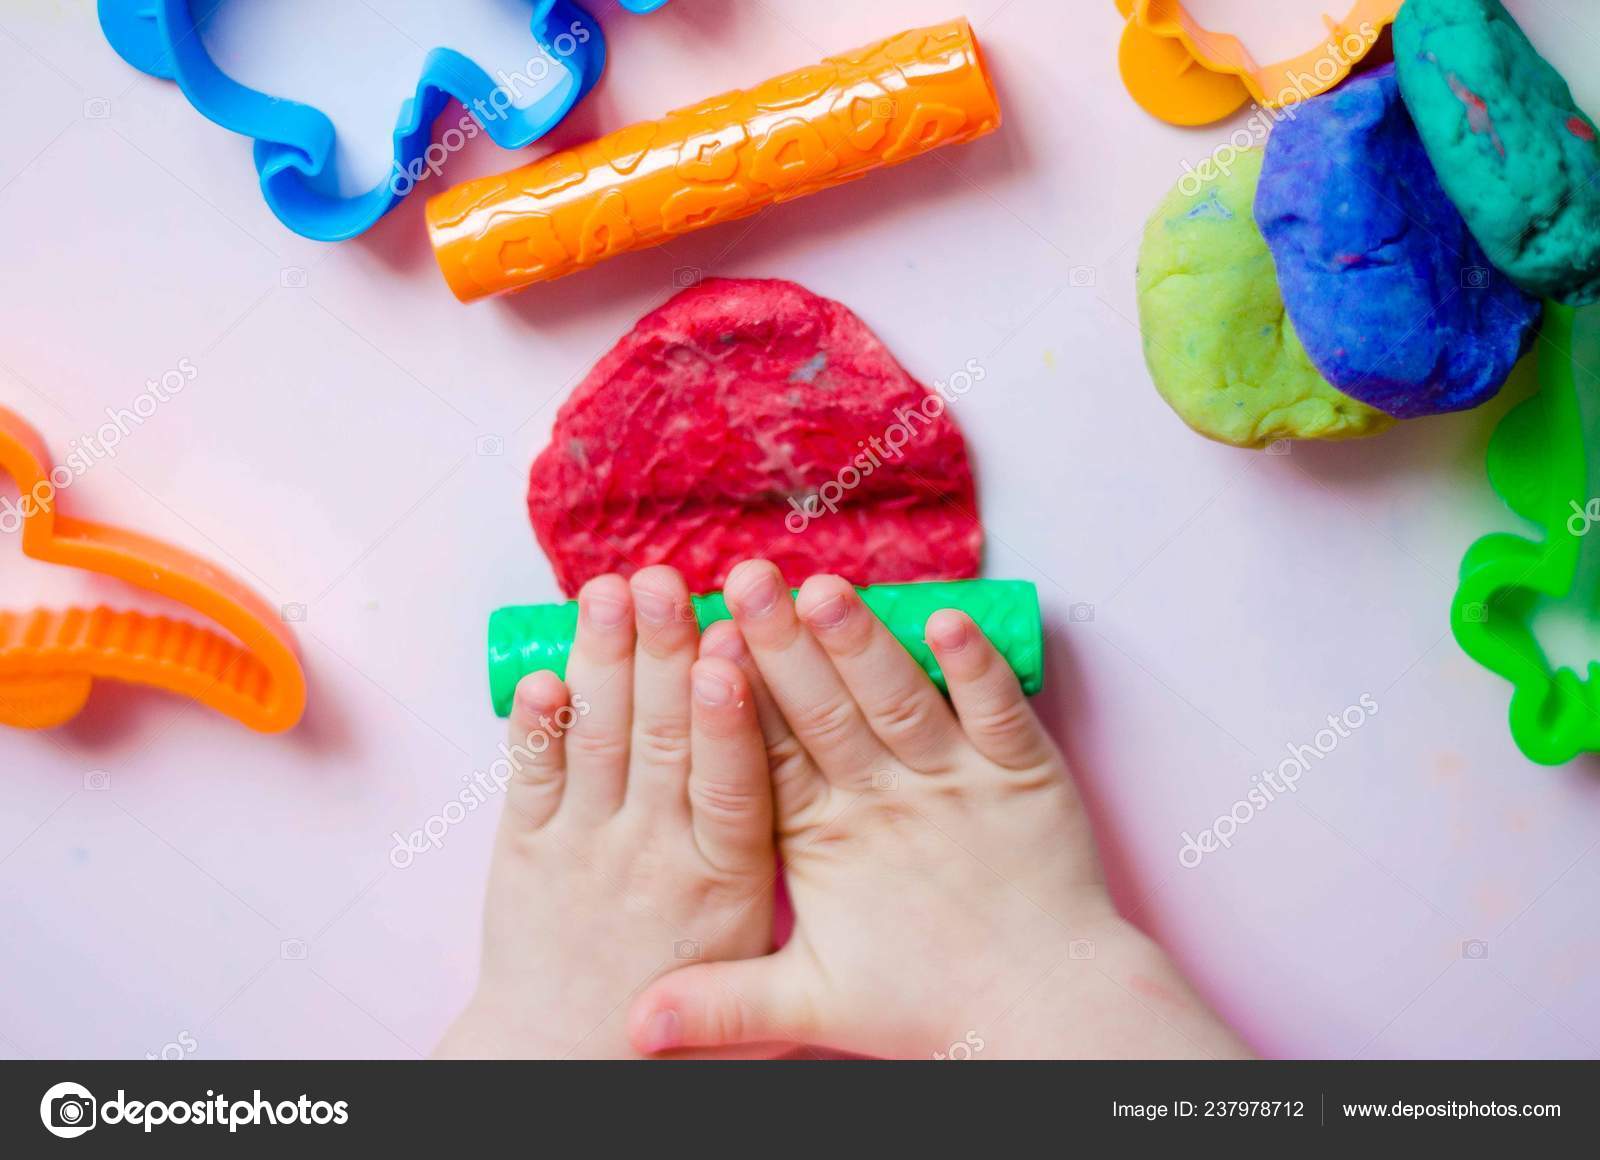 Скажи пластилин. Пластилин для детей. Пластилин в руках. Ребенок раскатывает пластилин. Пластилин в руках у детей.